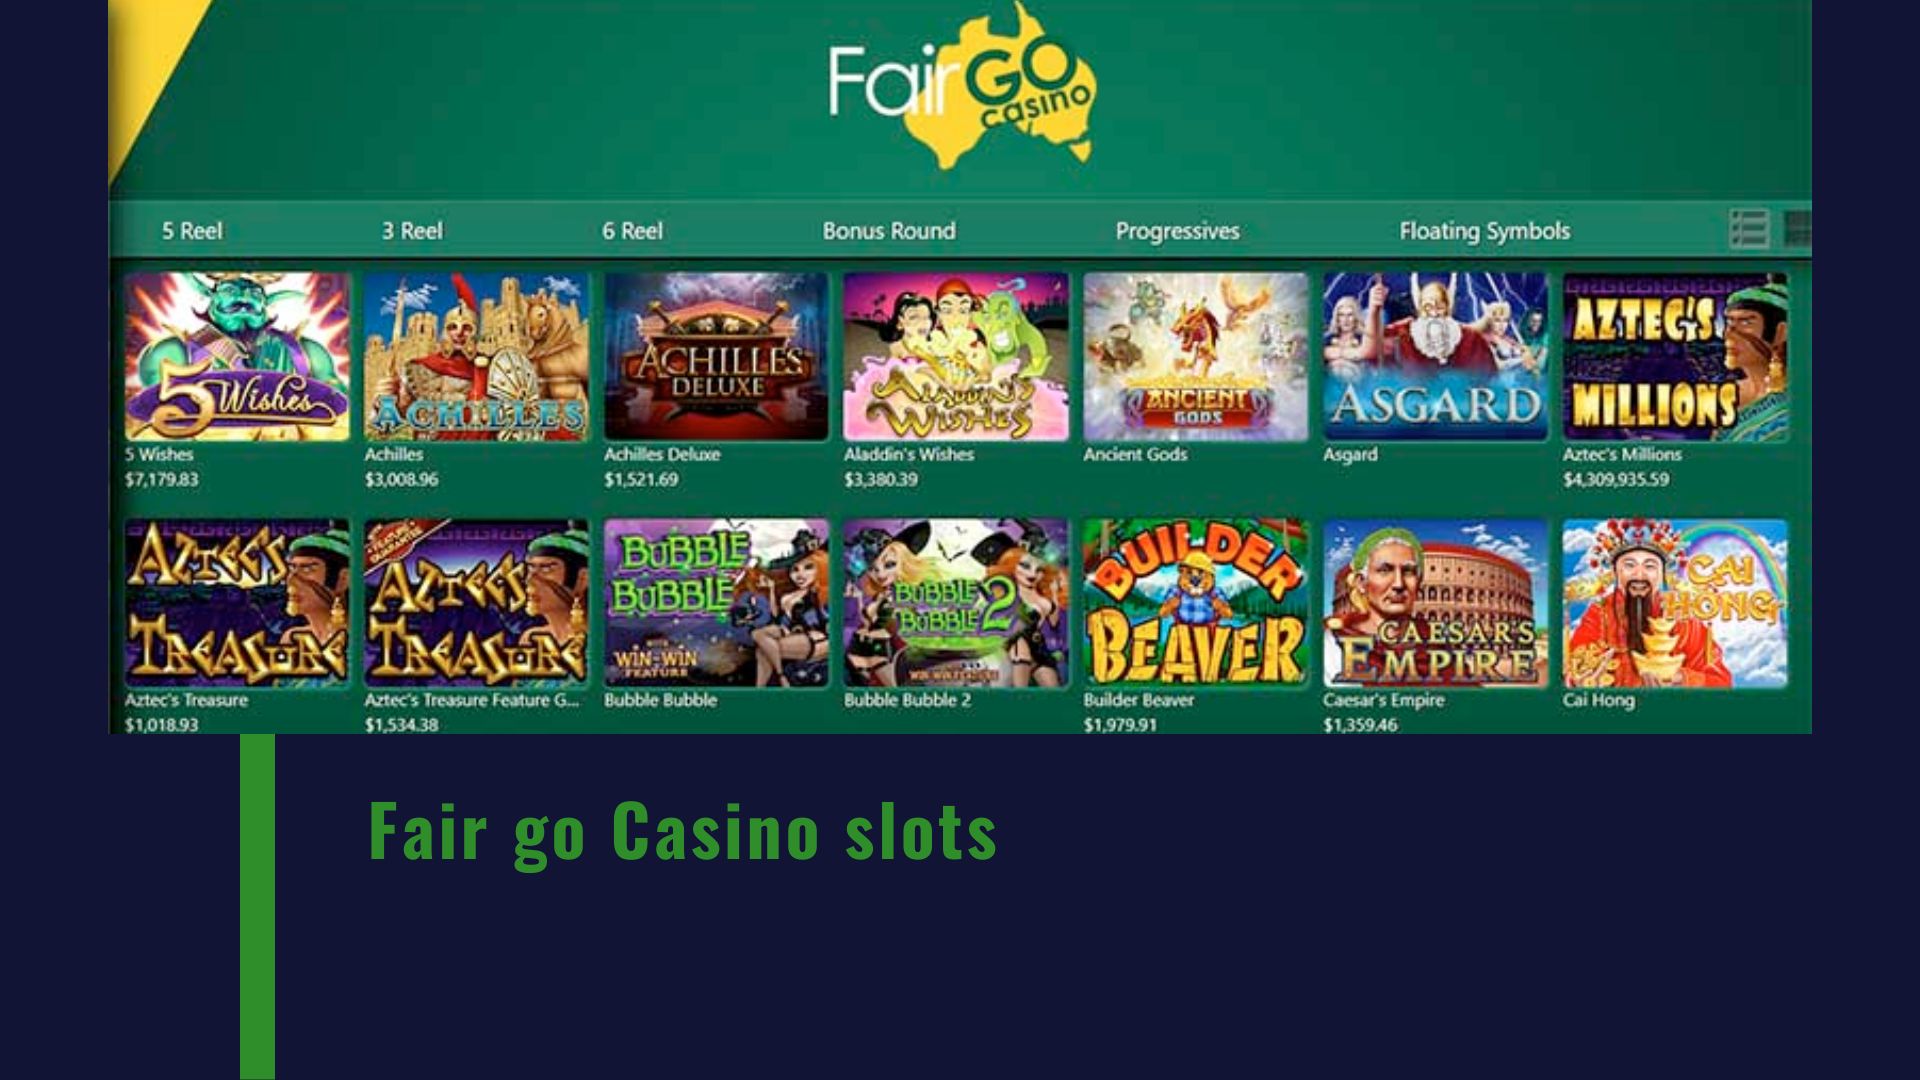 Fair go Casino slots 